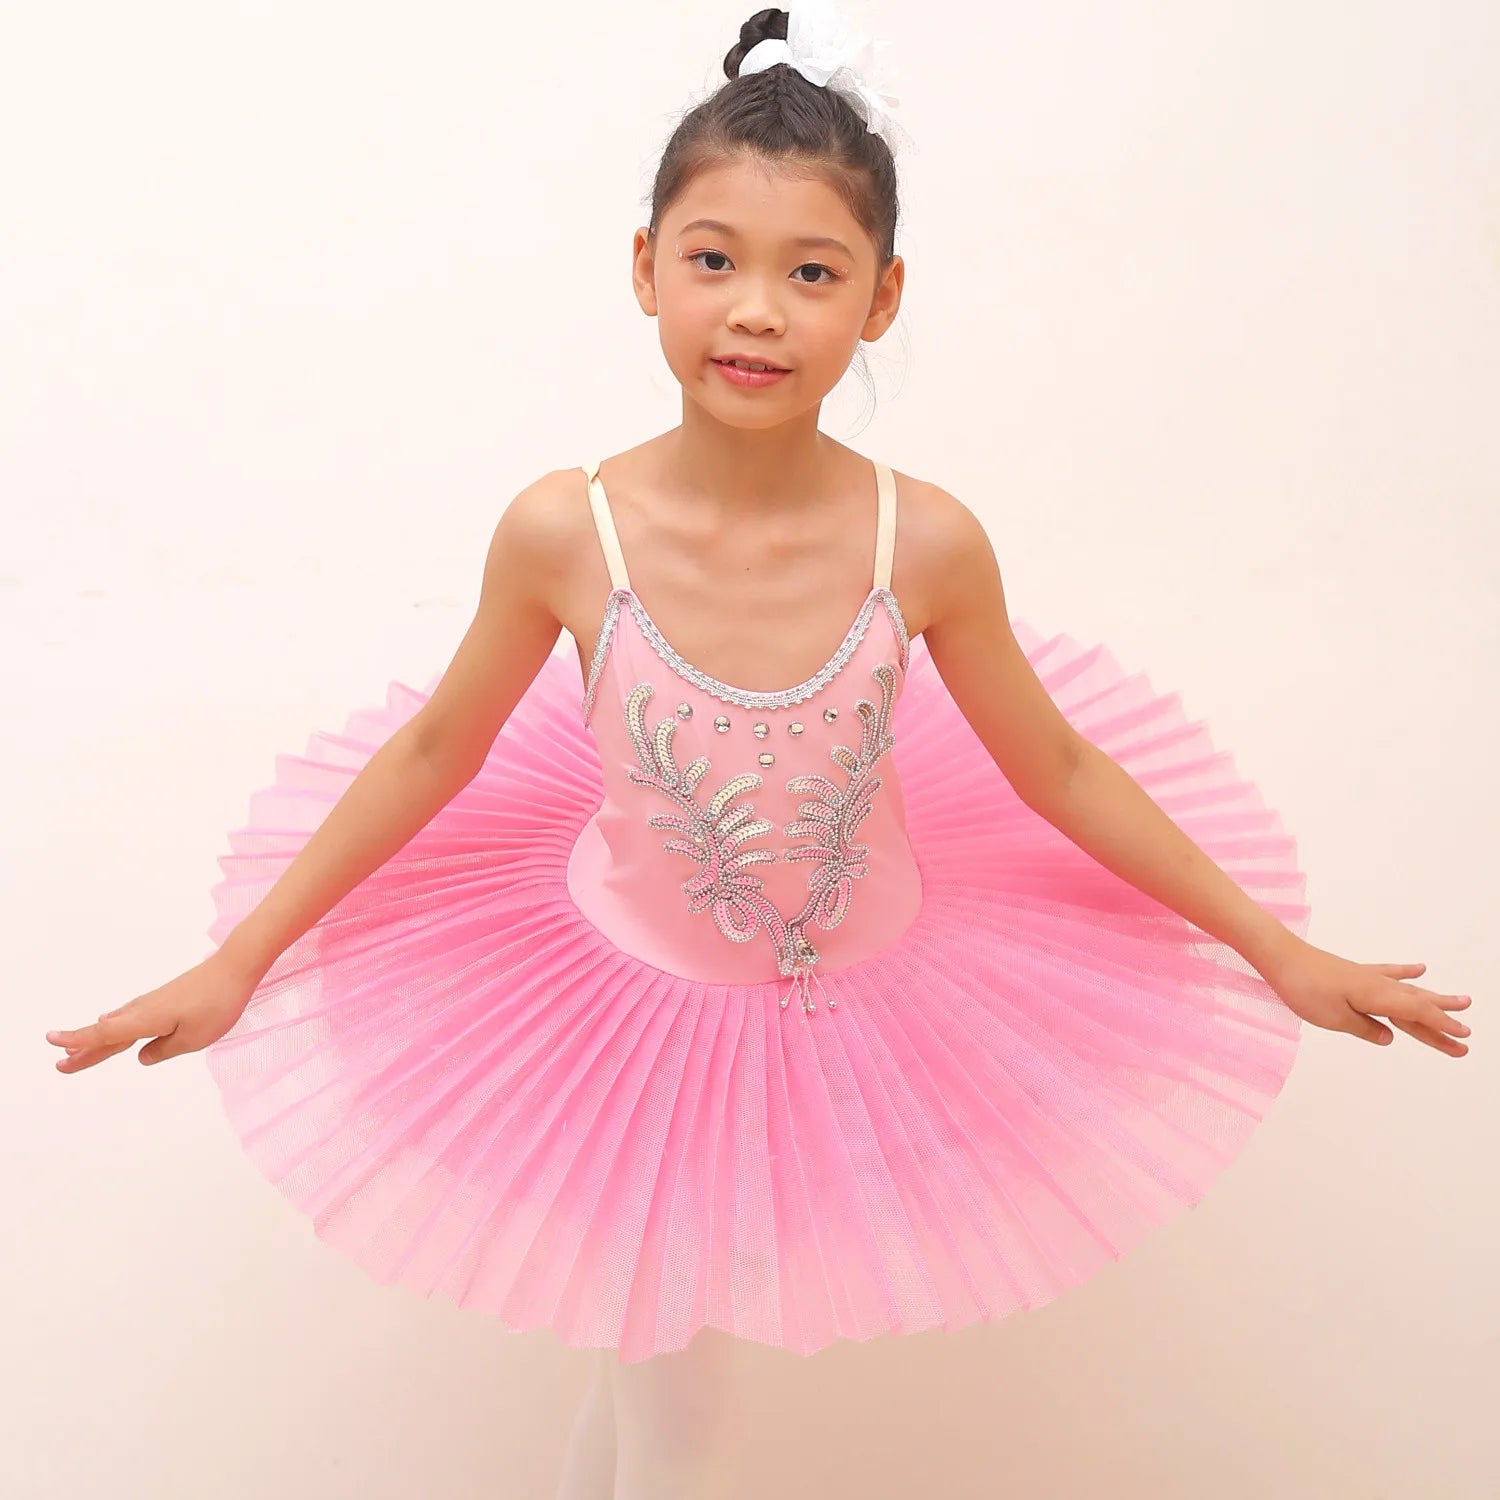 Tutu Skirt For Ballet Swan Lake Costumes Toddler Dress Pink US by Baby Minaj Cruz